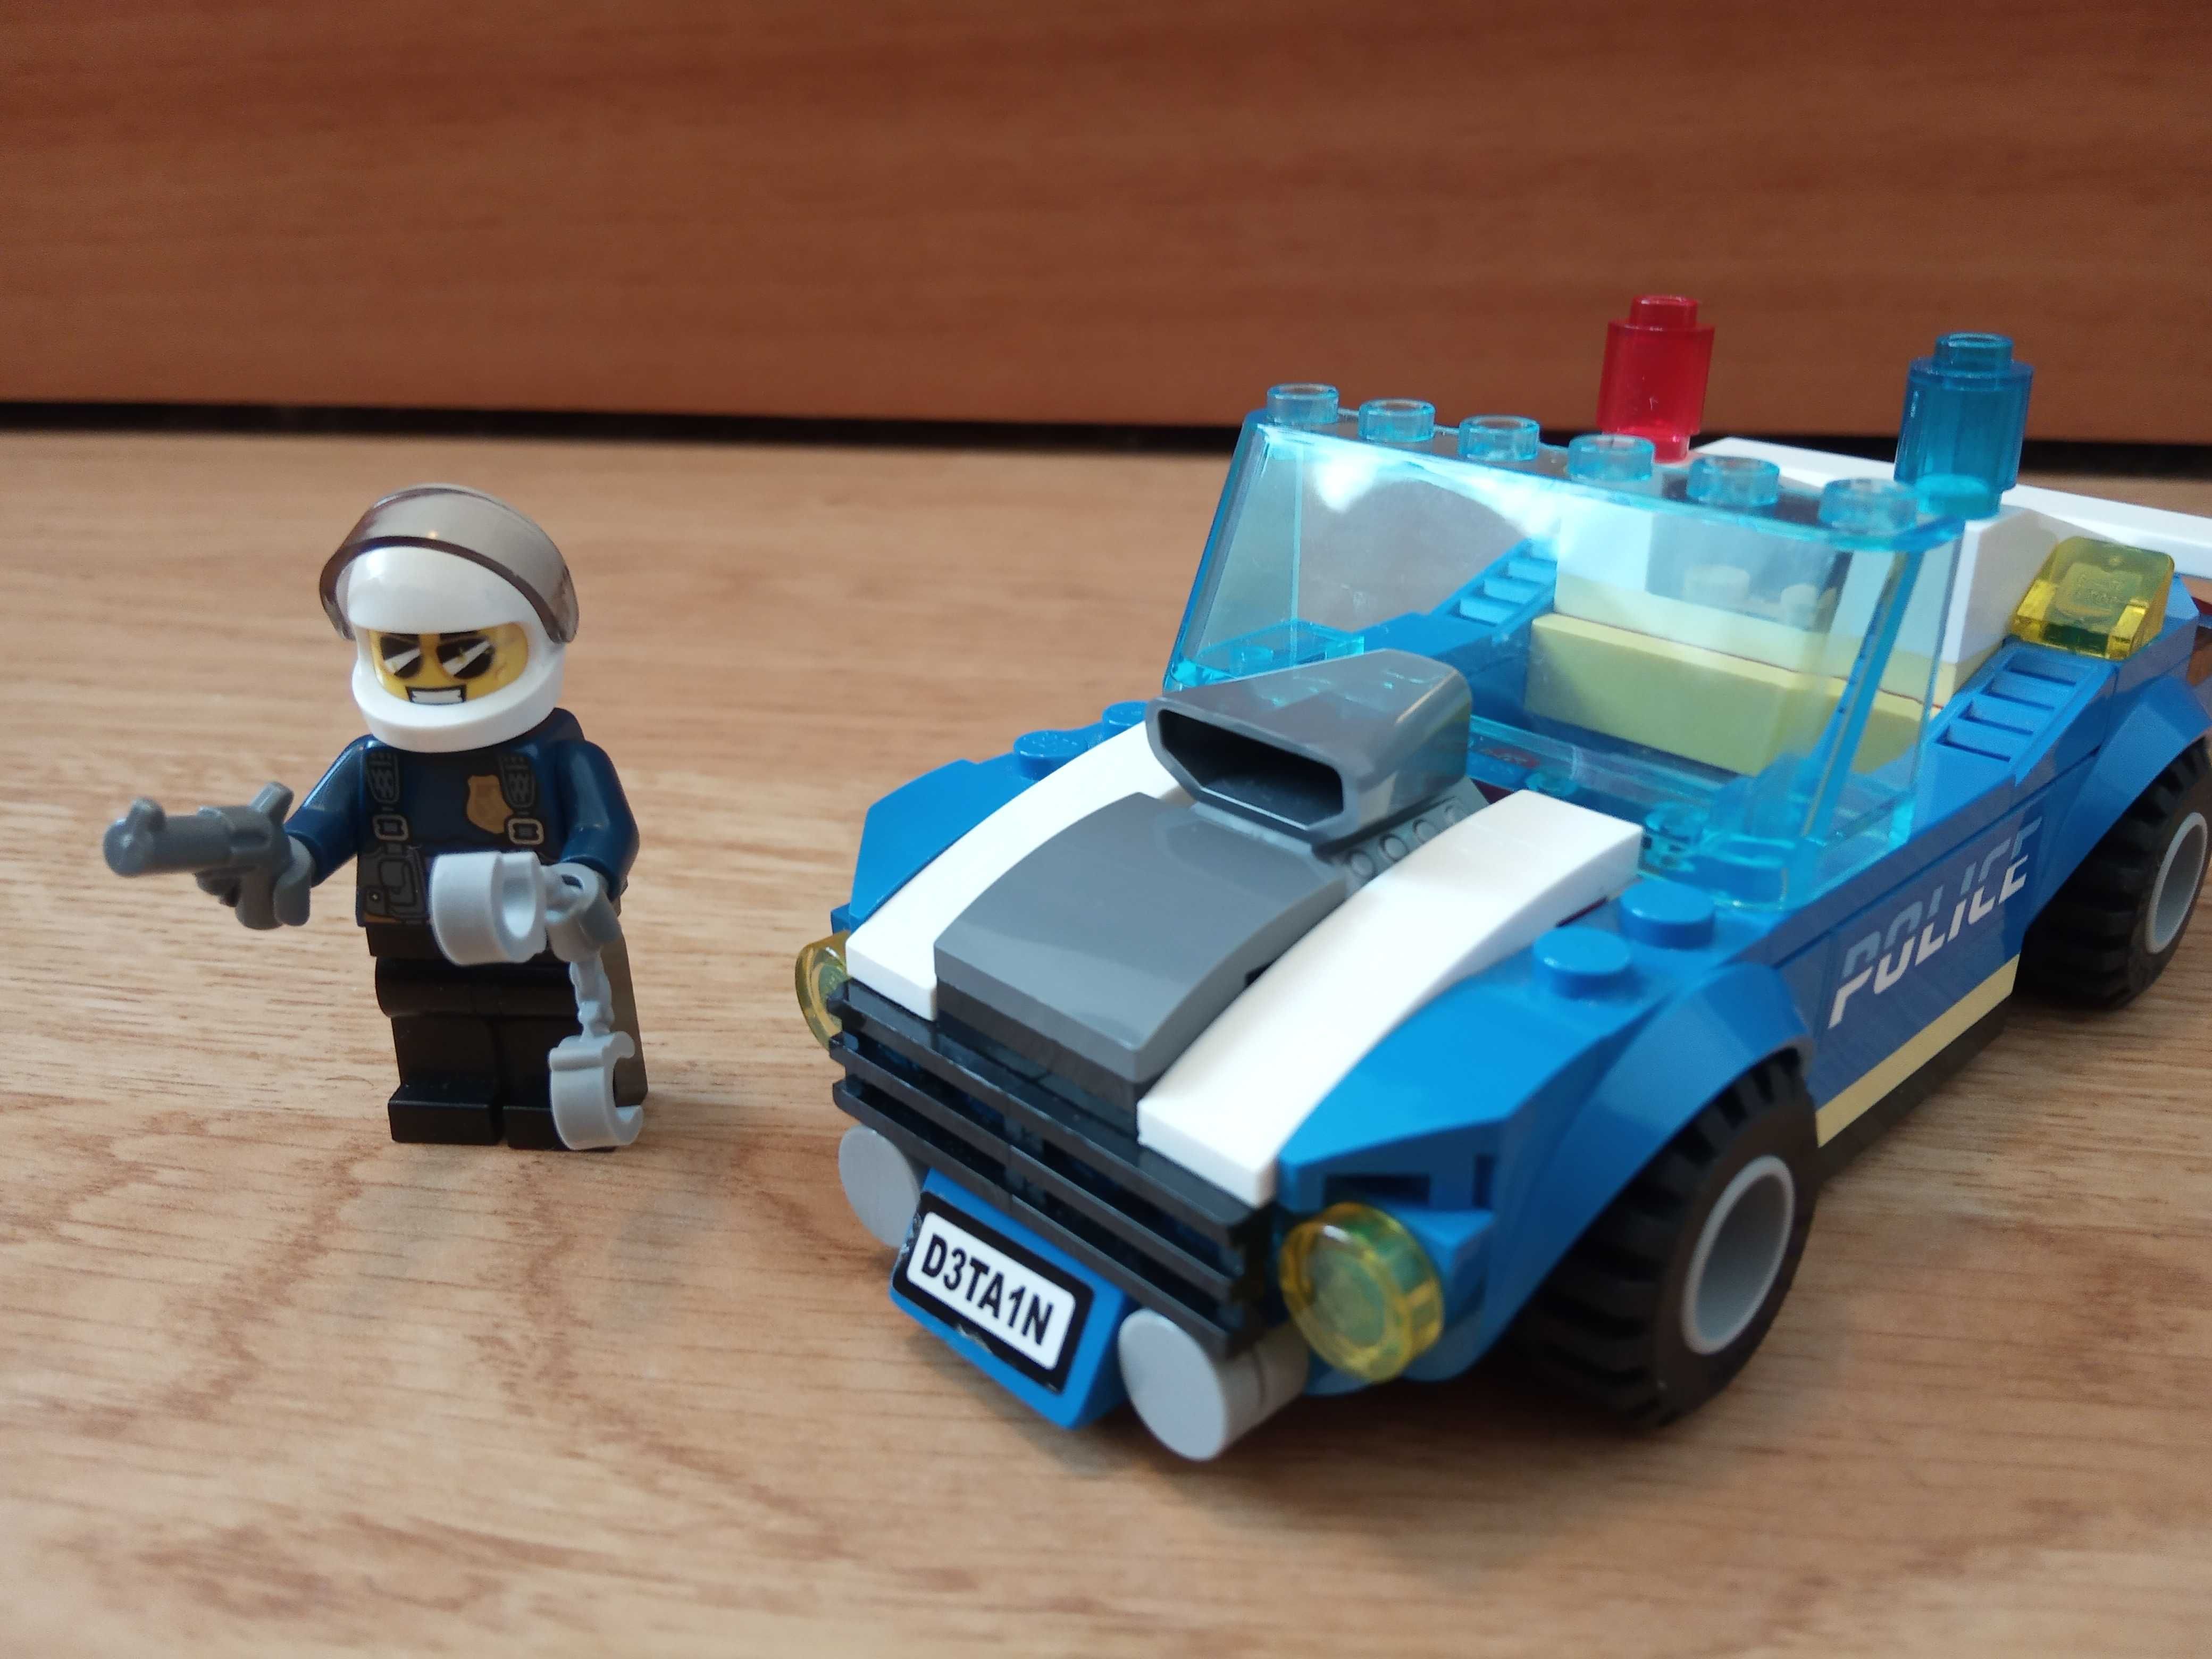 Lego Duke DeTain si masina lui